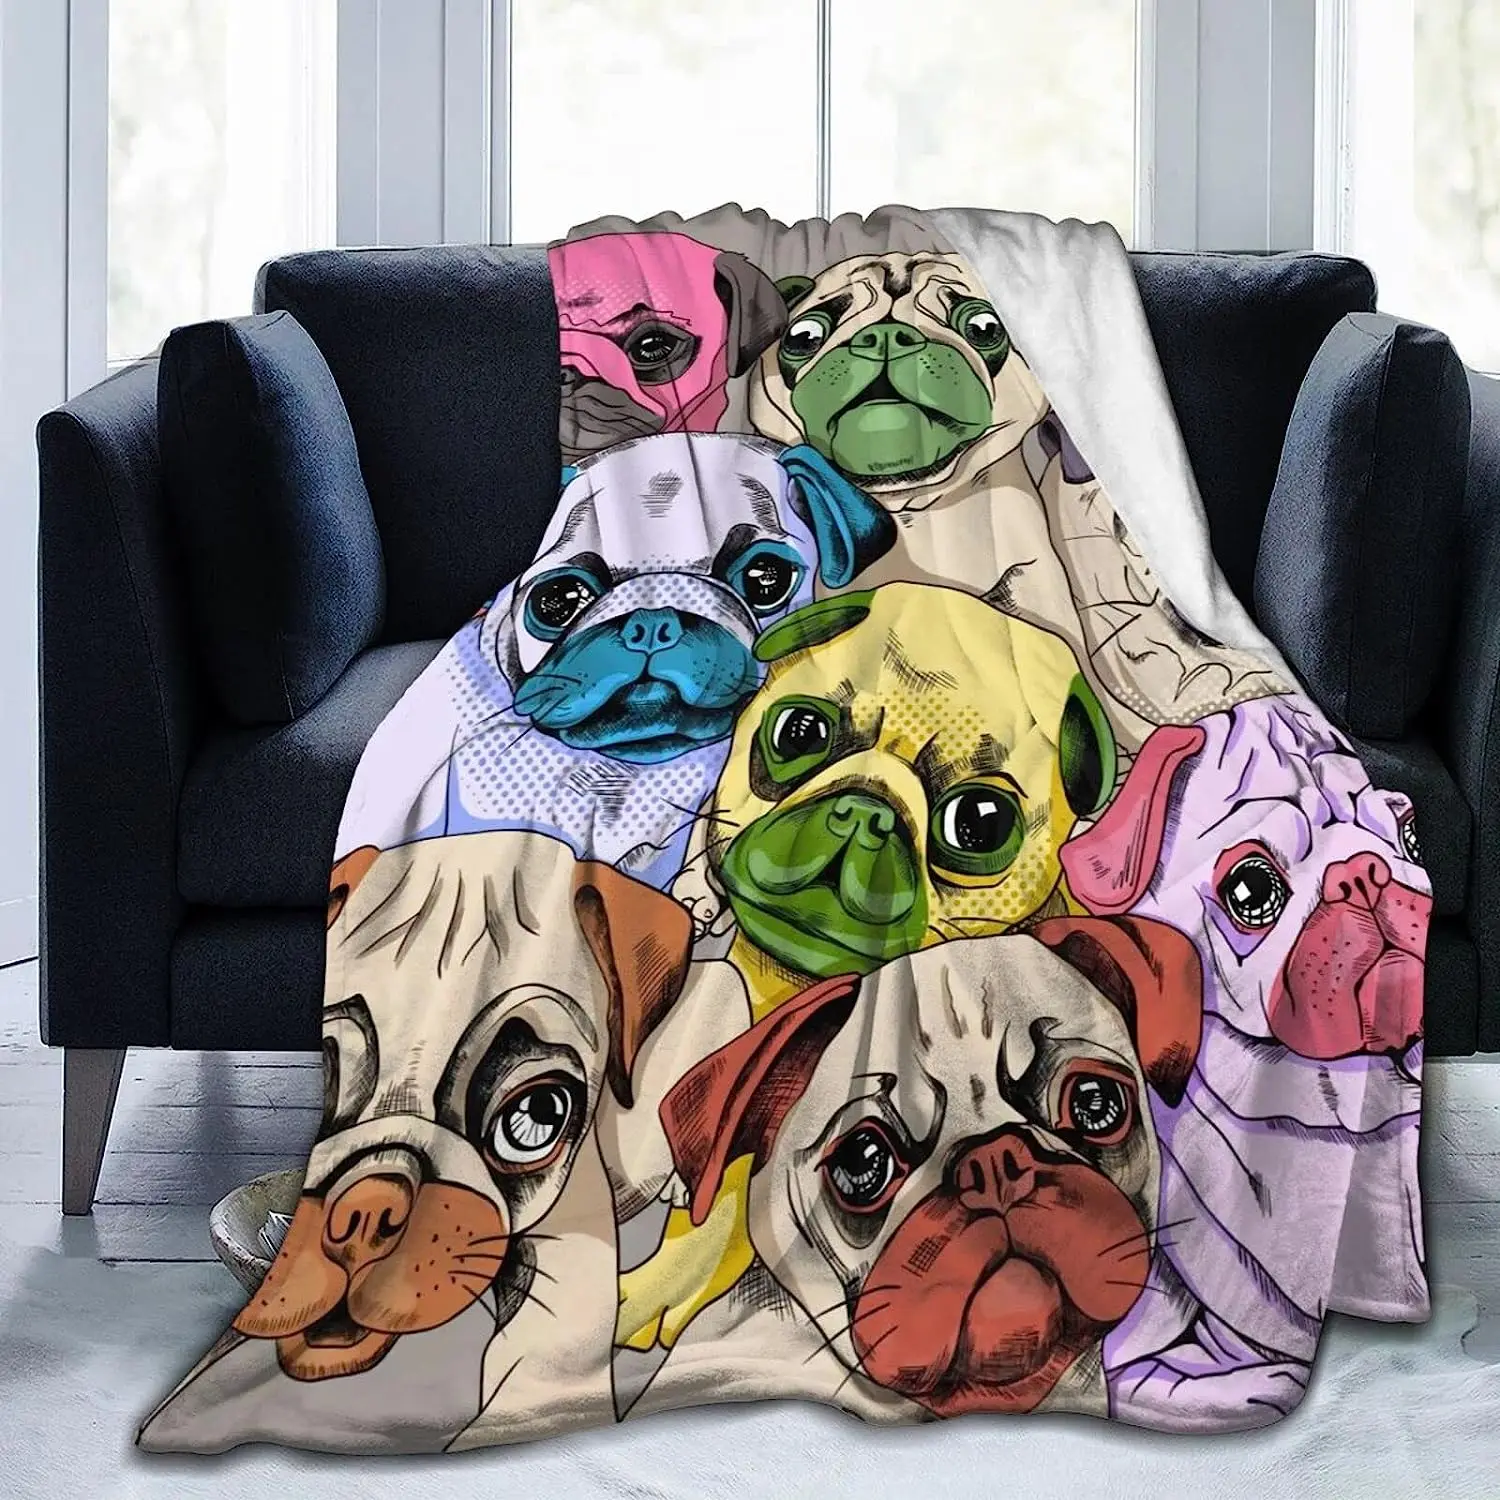 

Для собак Мопсов Throw ультра-мягкое Флисовое одеяло 50x40 дюймов, для постельных принадлежностей, кушетки, дивана, кровати, теплое покрывало